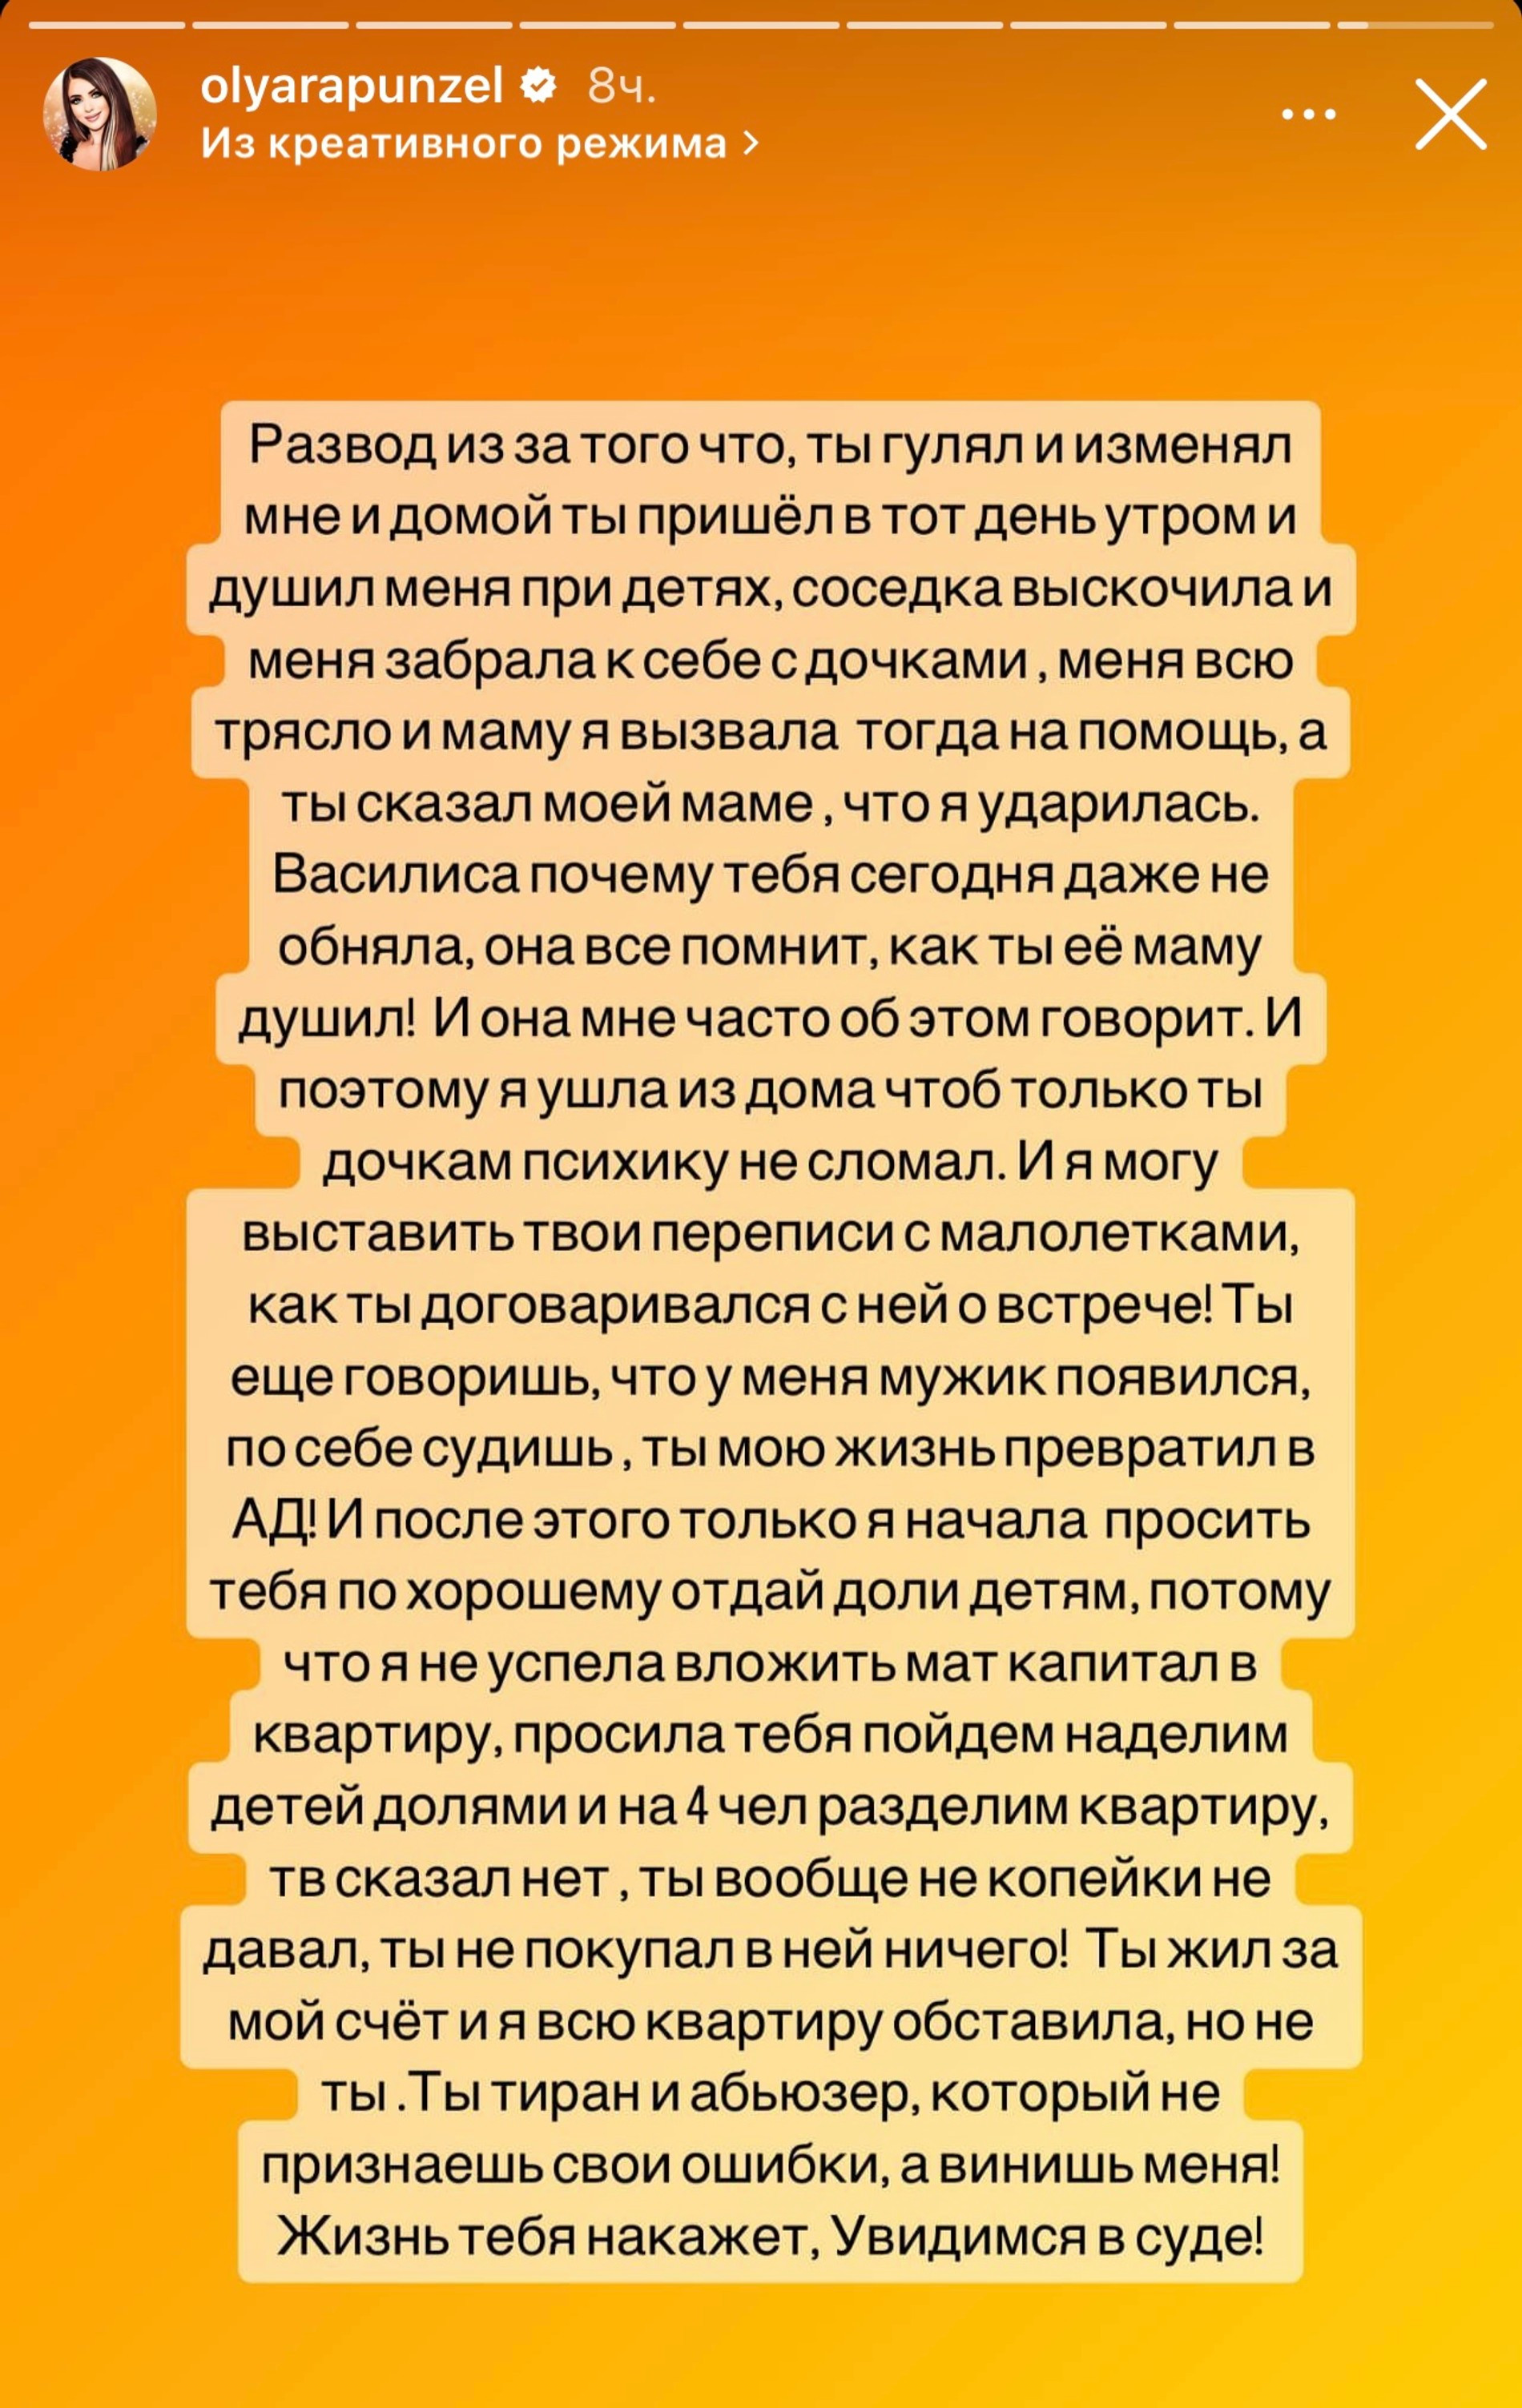 Пост Ольги Рапунцель с обвинениями в адрес Дмитрия Дмитренко
Фото: Инстаграм (запрещен в РФ)